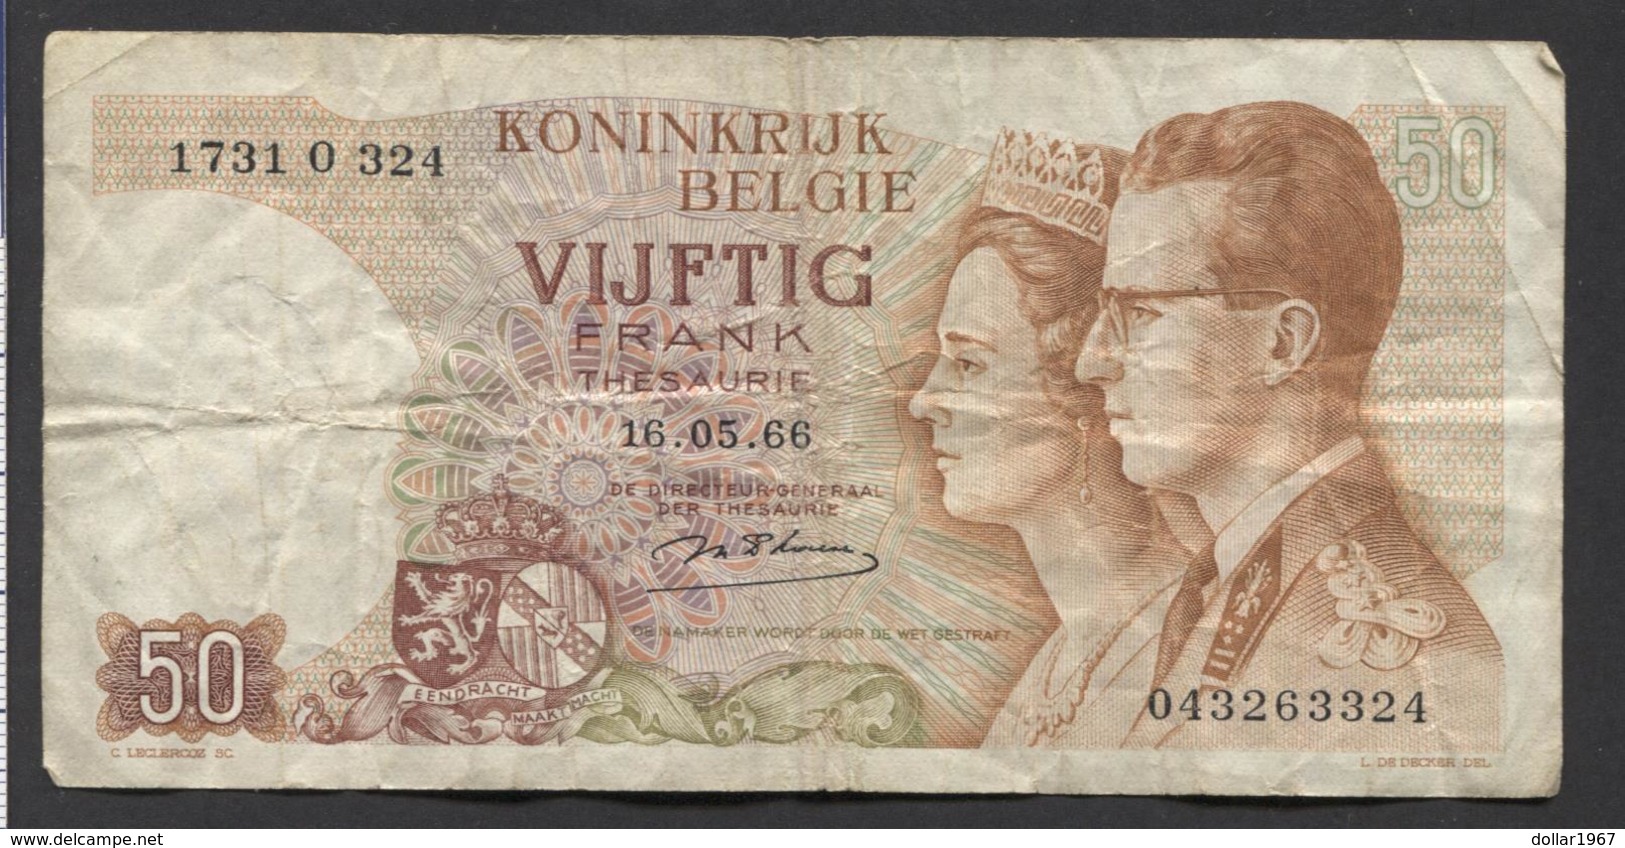 België 50 Frank 14-5- 1966 -NO: 1731 O 324 - 50 Francs